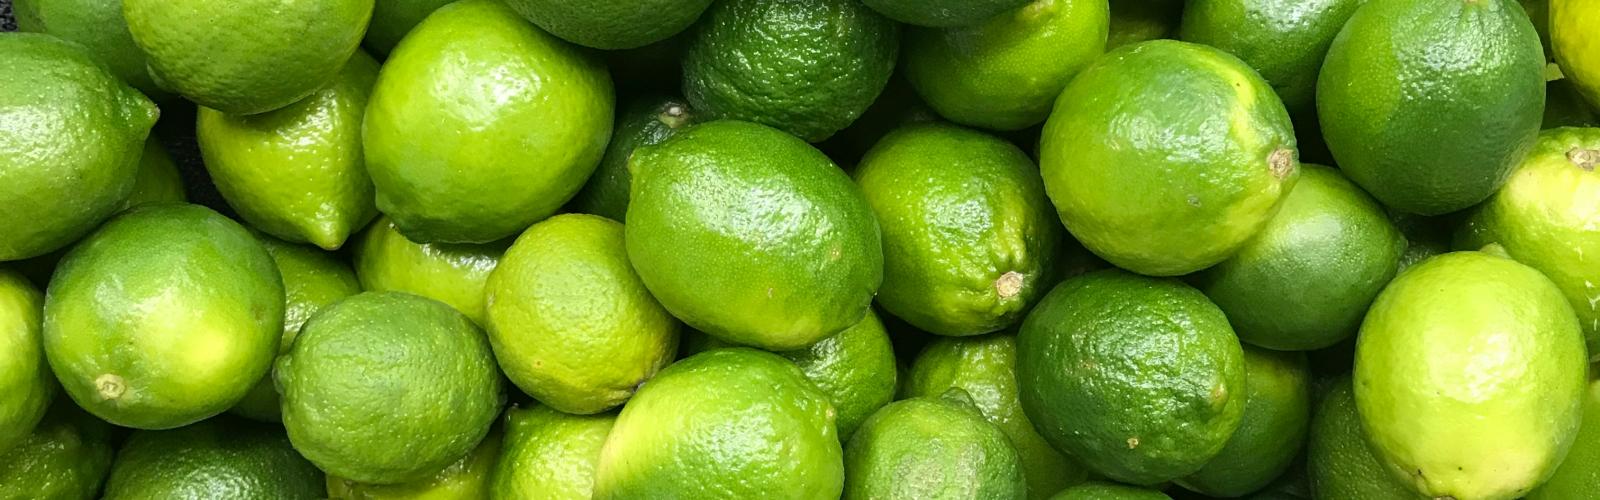 Limettier : Guide complet pour cultiver et savourer ses citrons verts acidulés